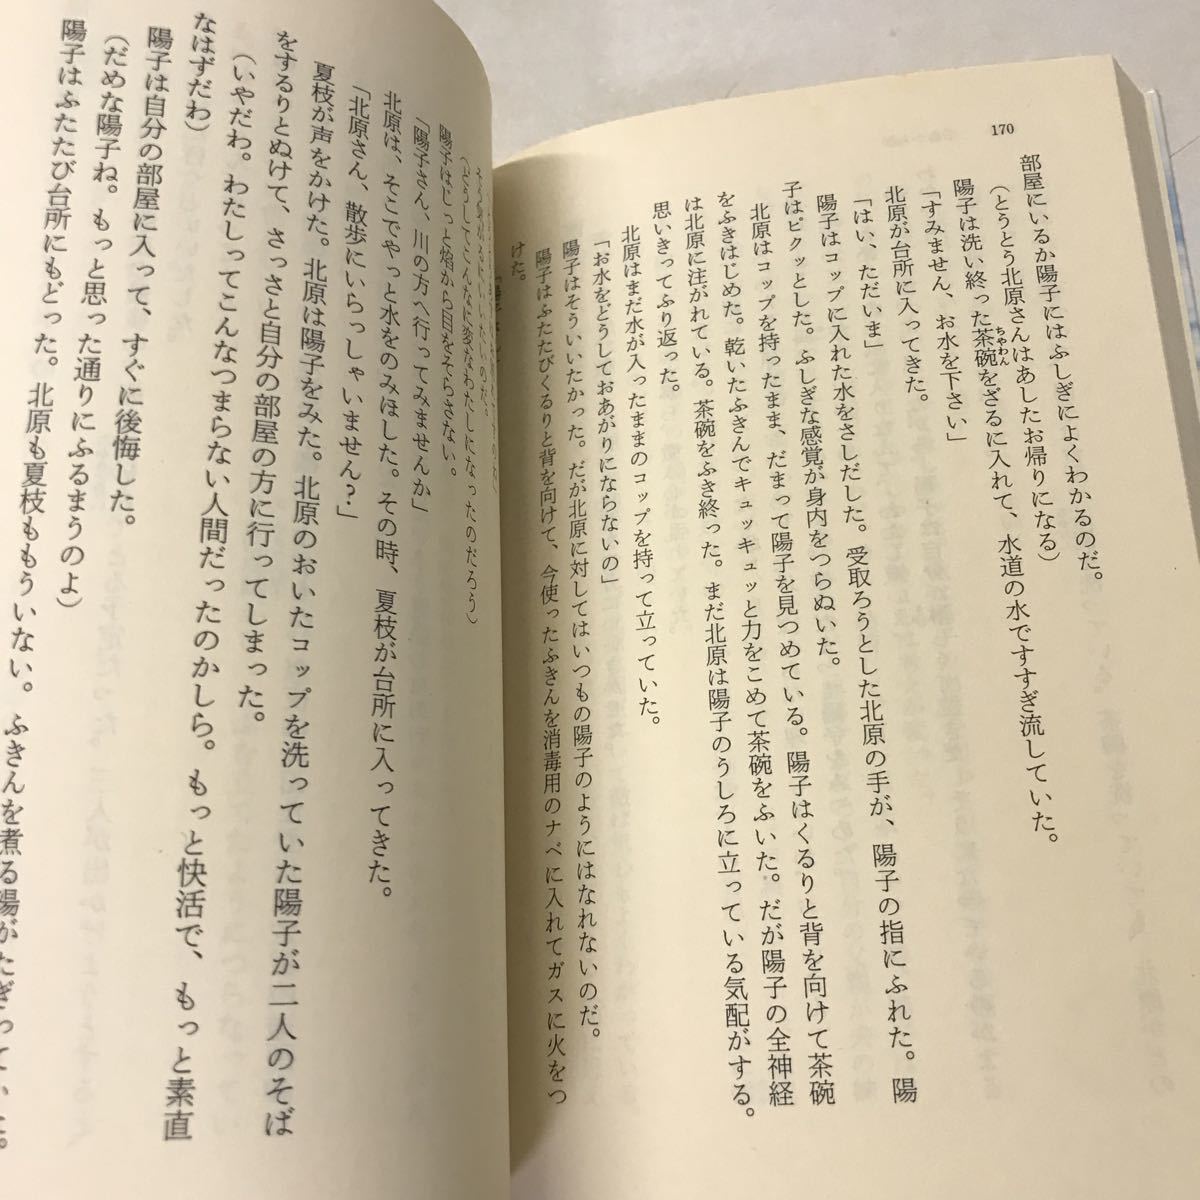 U01* Miura Ayako библиотека книга@ совместно 47 шт. комплект лед пункт христианство ружье . соль . перевал другой повесть 230609